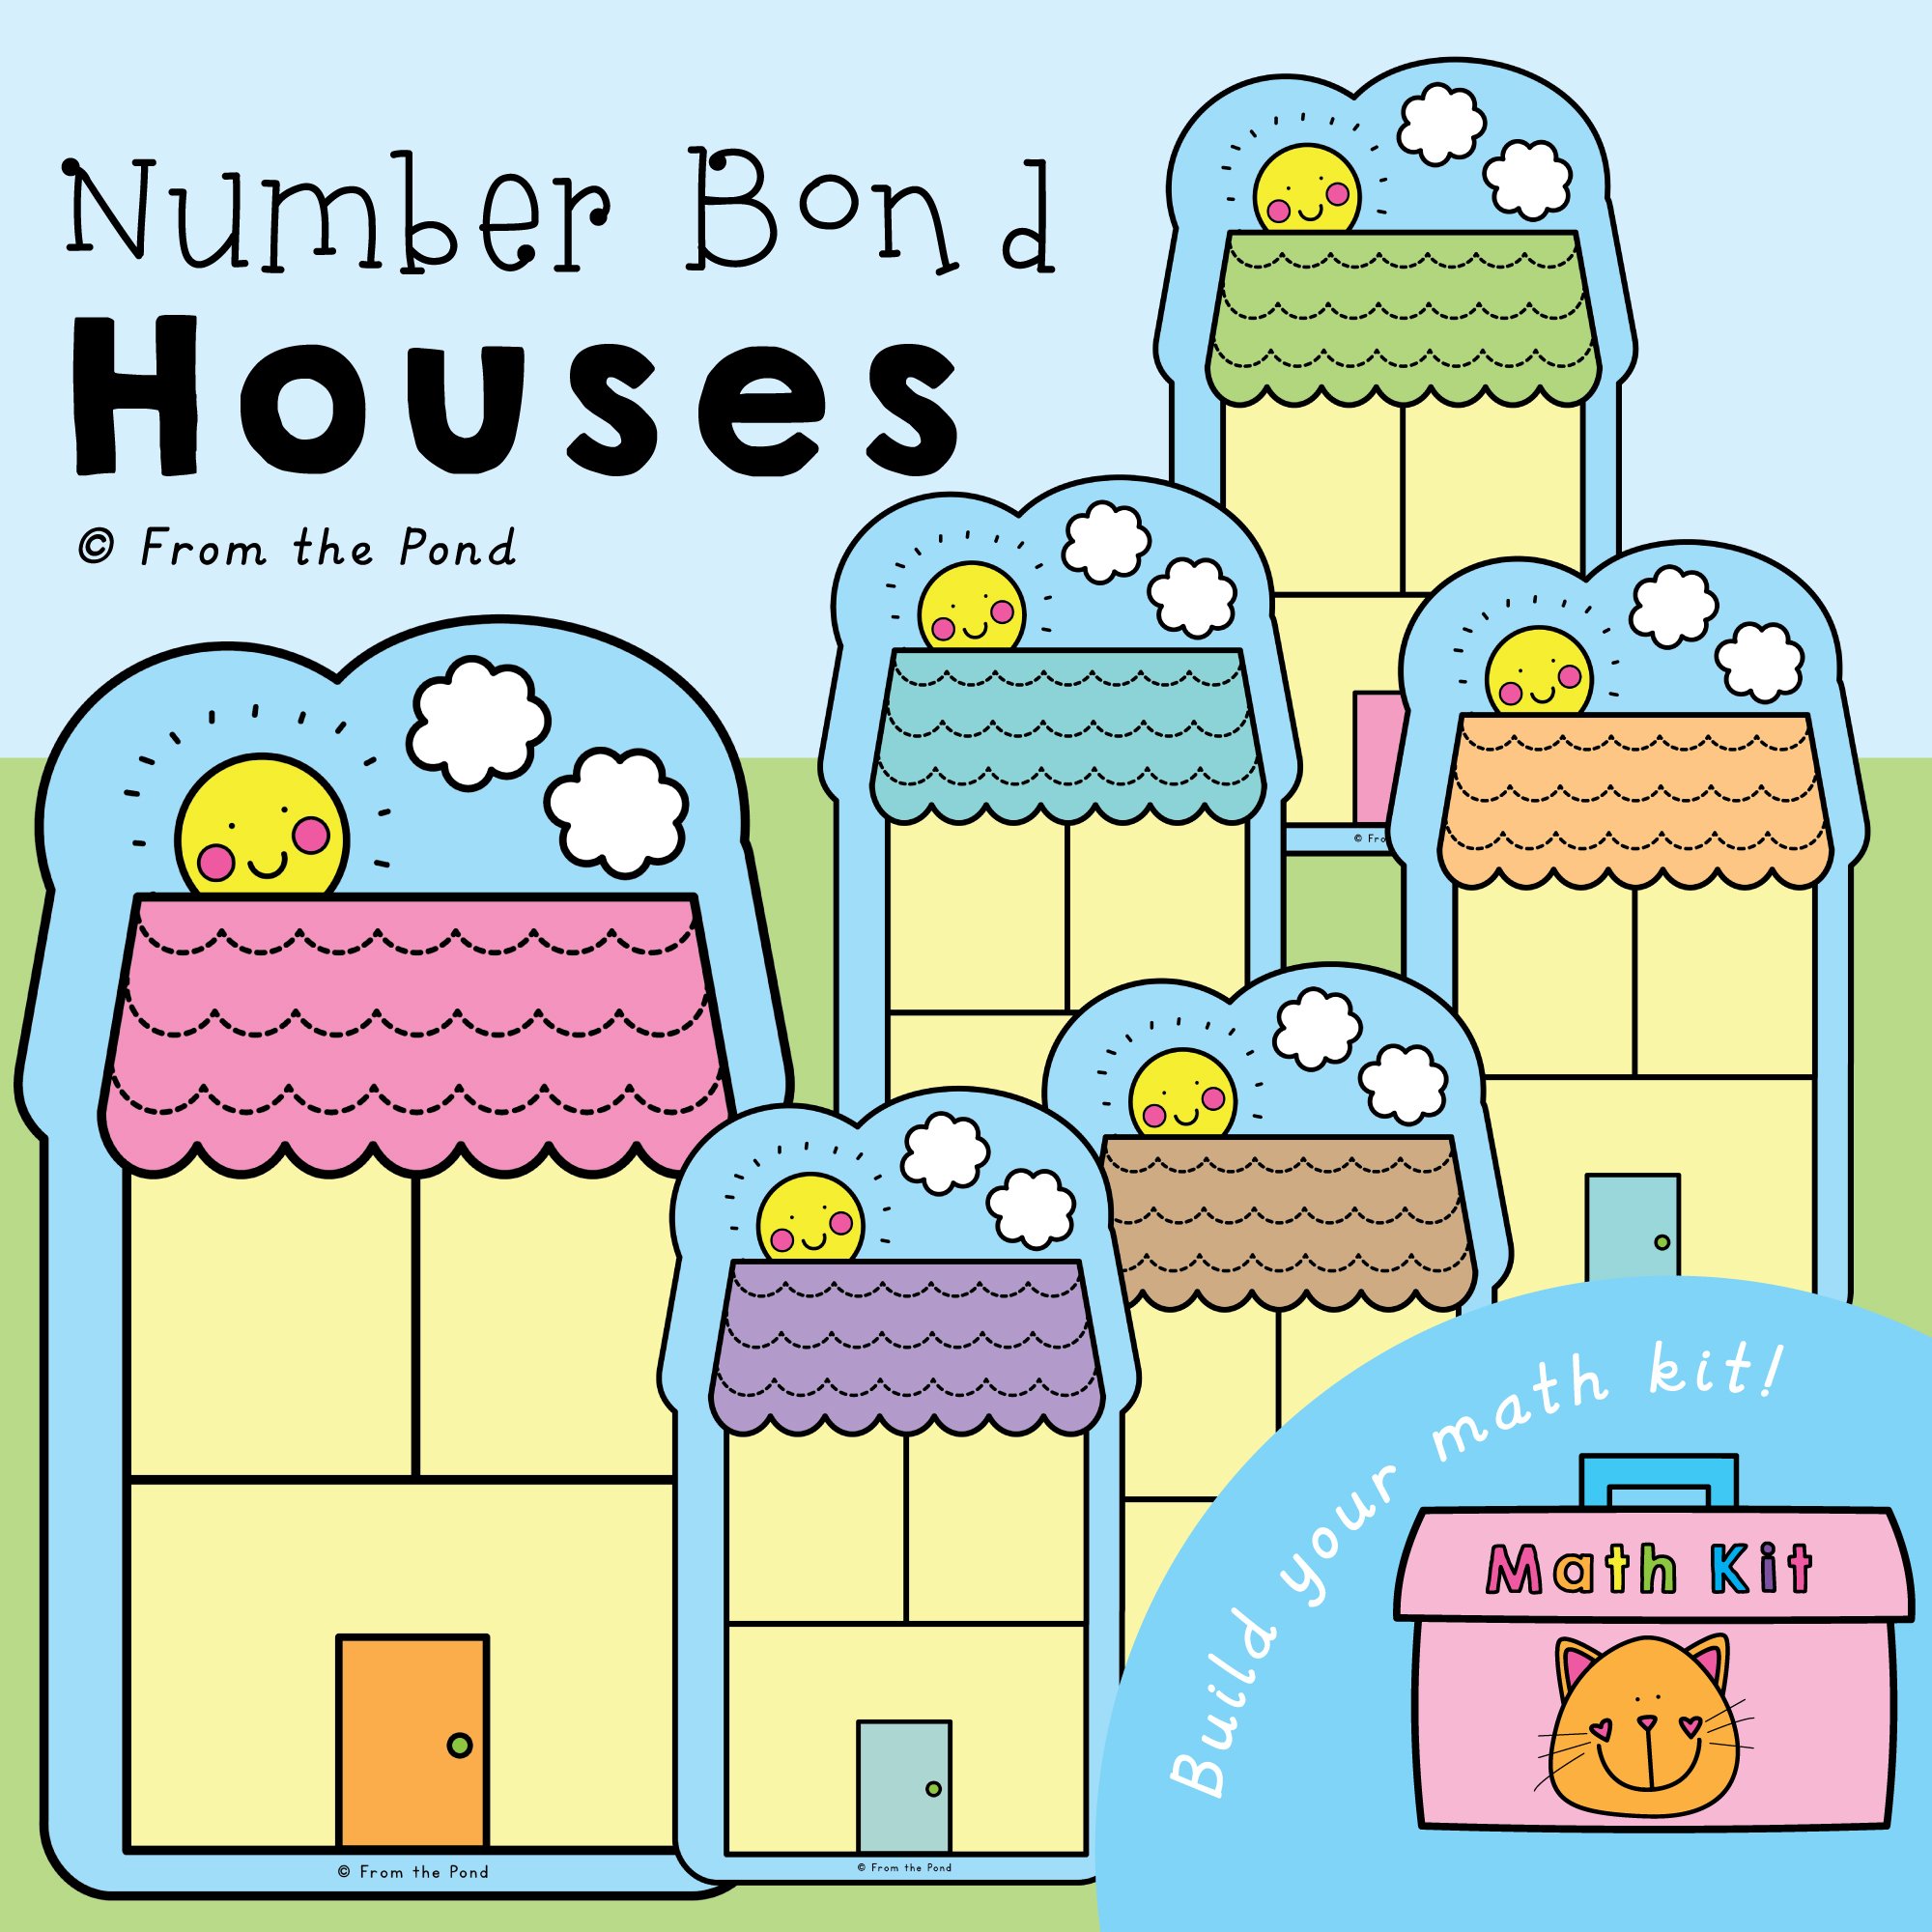 number-bond-houses-pic-01.jpg